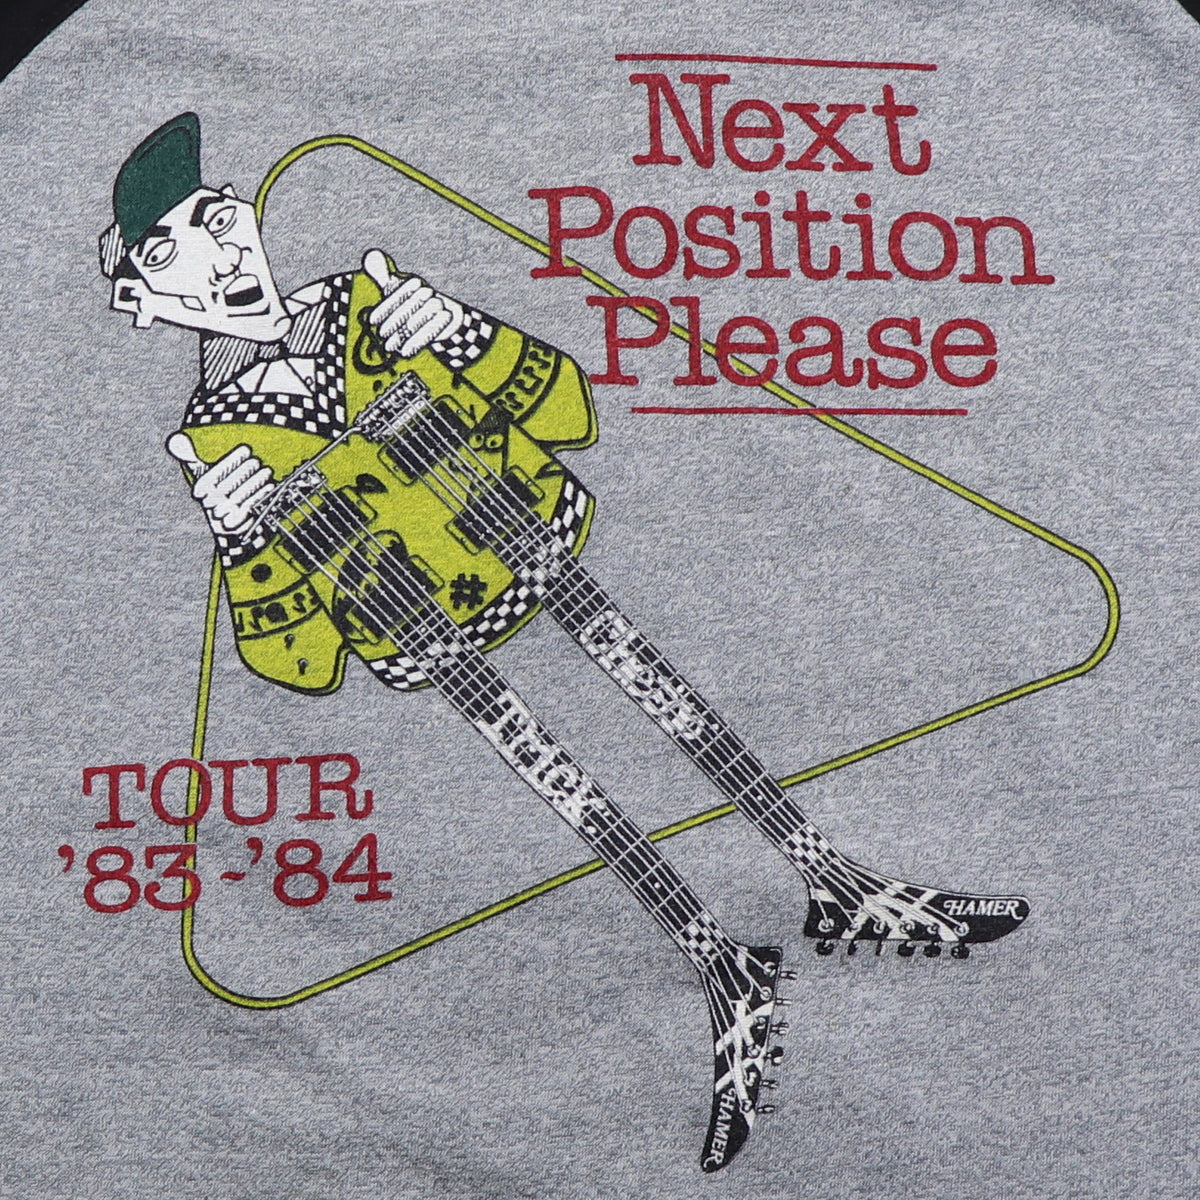 1983 Cheap Trick Next Position Please Tour Shirt